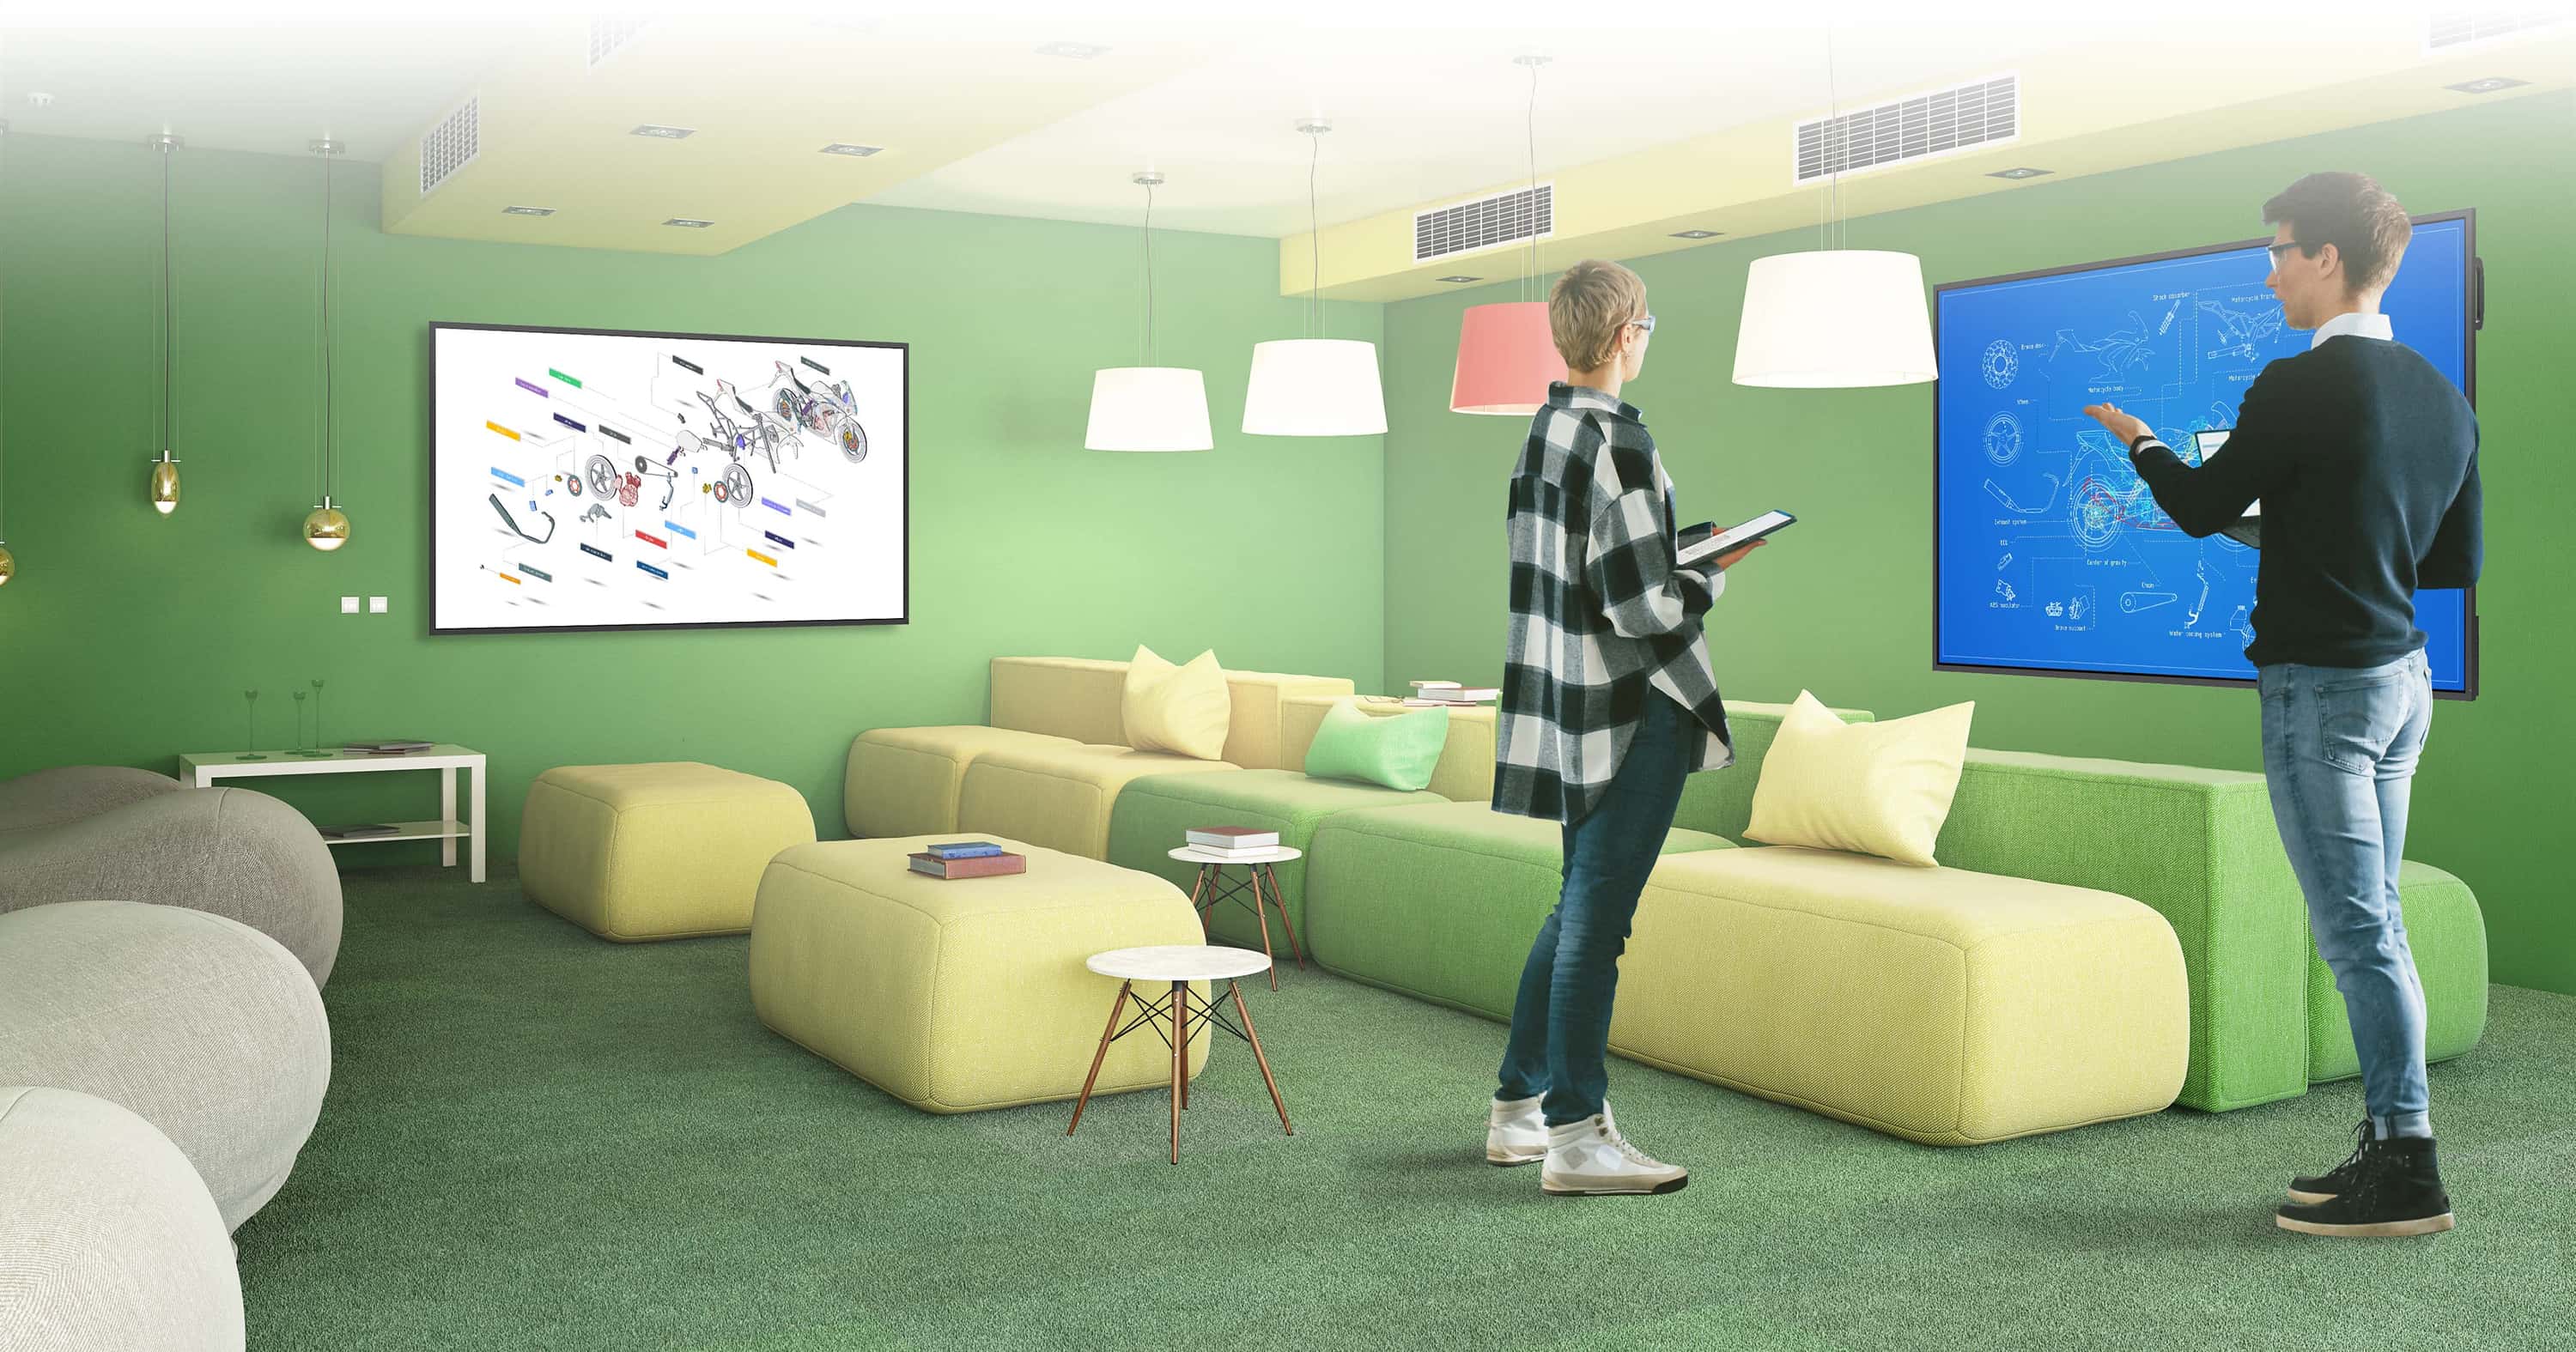 Bir erkek ve kadın, pelüş koltuklar ve parlak renkli duvarlarla çevrili çok modern, "rahat" bir toplantı odası ortamında ayakta duruyor. Önlerindeki duvarda ve soldaki duvarda, üzerinde tartıştıkları bir motosikletin tasarım ressamı diyagramlarını gösteren birer Optoma N-Serisi ekranı vardır.